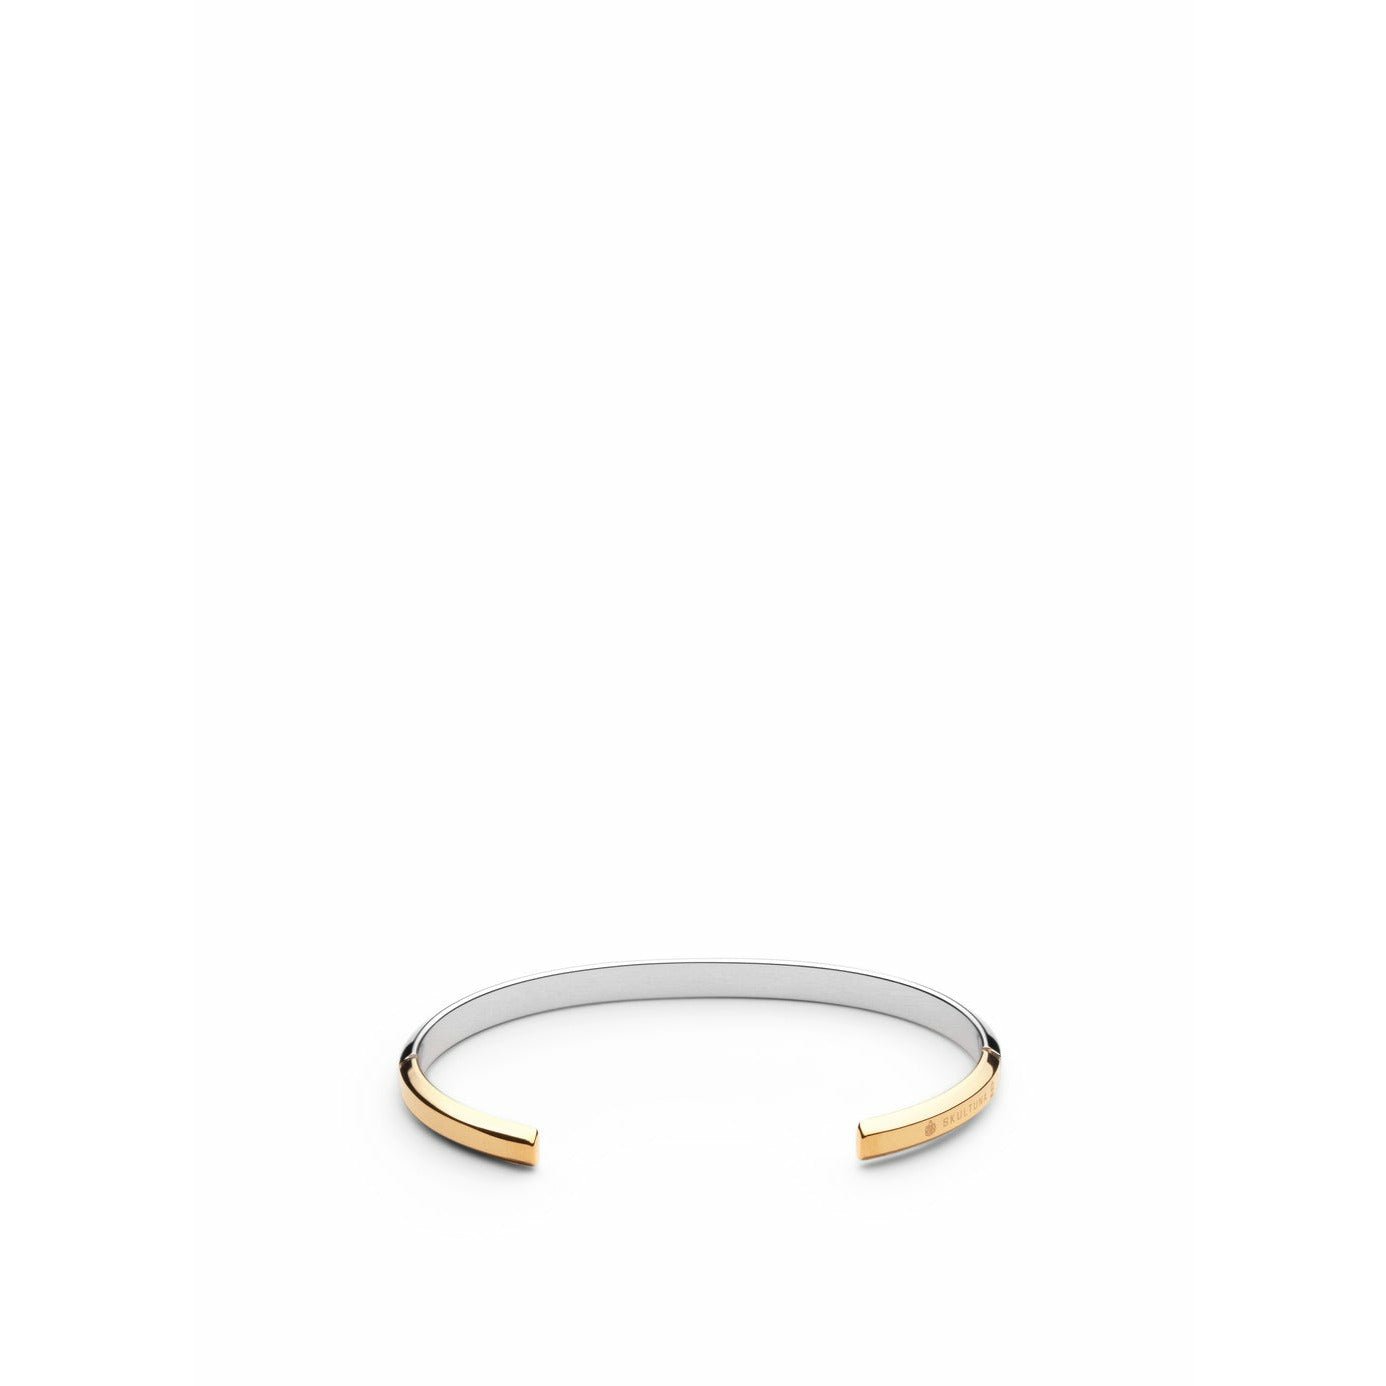 Skultuna Ikon tunn armband medium polerat stål/guldpläterat, Ø16,5 cm